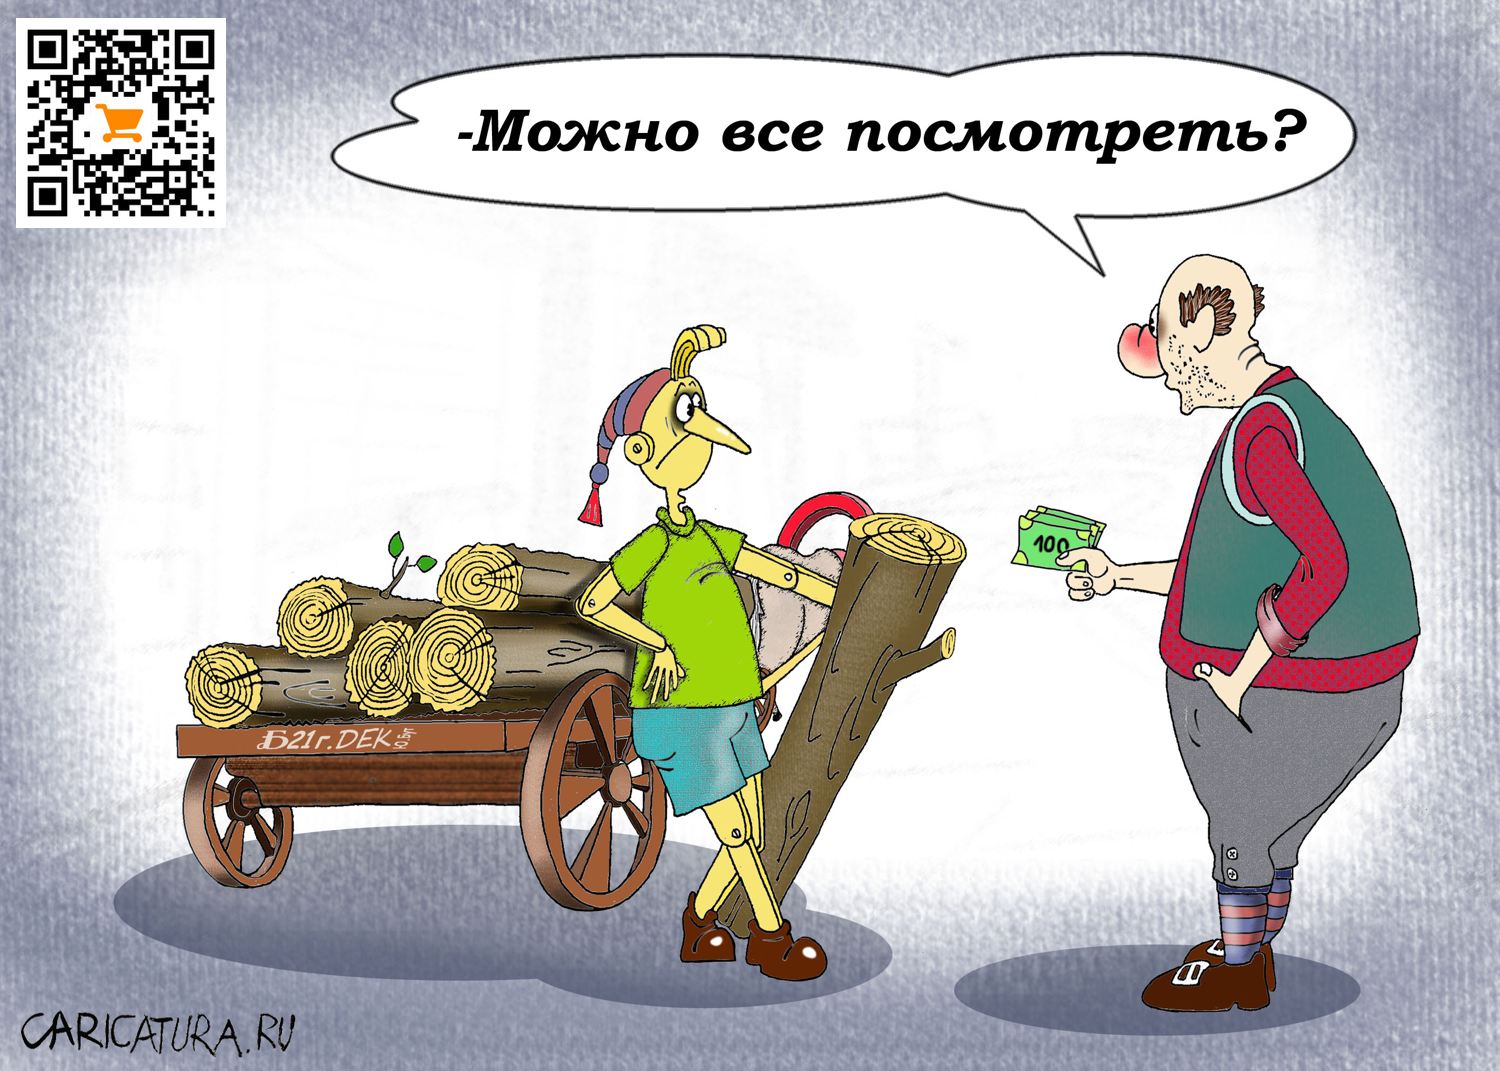 Карикатура "Про подход", Борис Демин